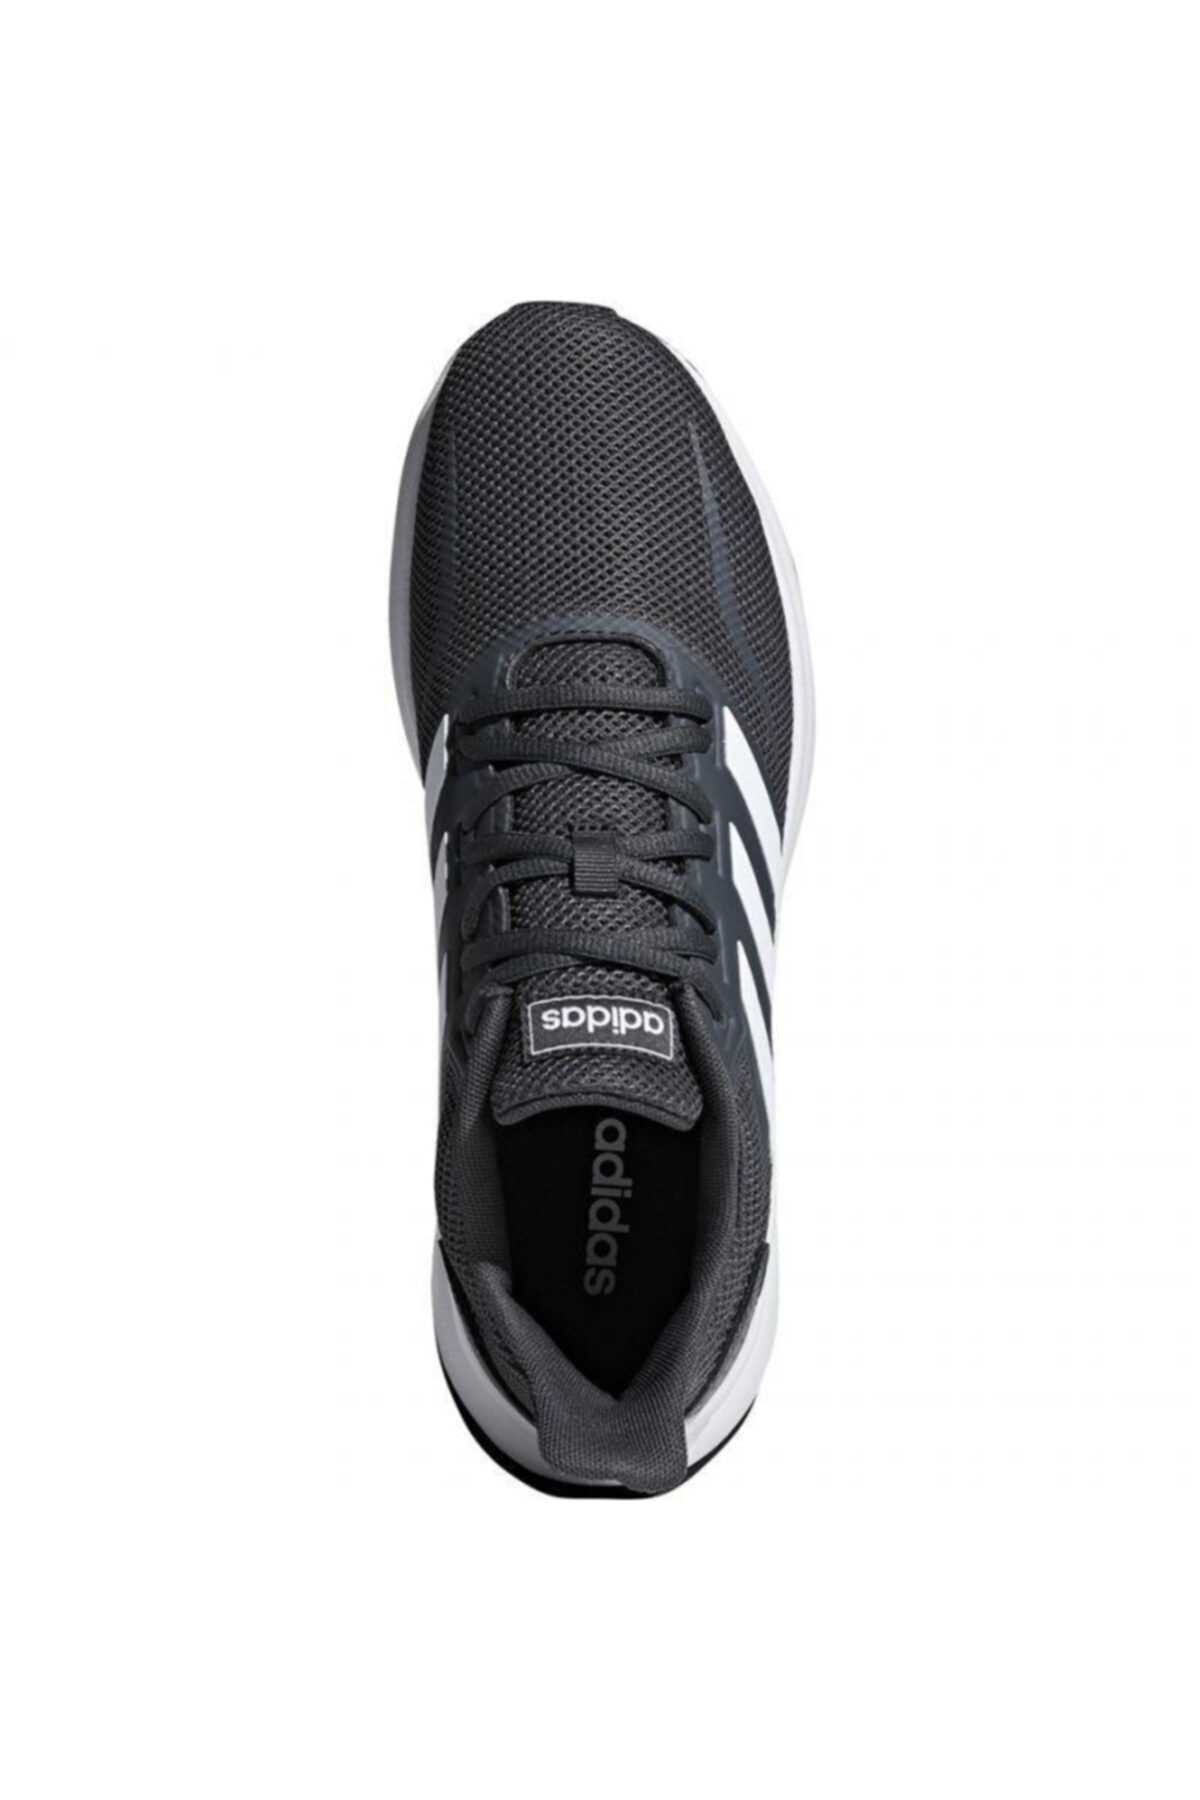 خرید انلاین کفش مخصوص دویدن مردانه خاص برند آدیداس رنگ نقره ای کد ty31282423